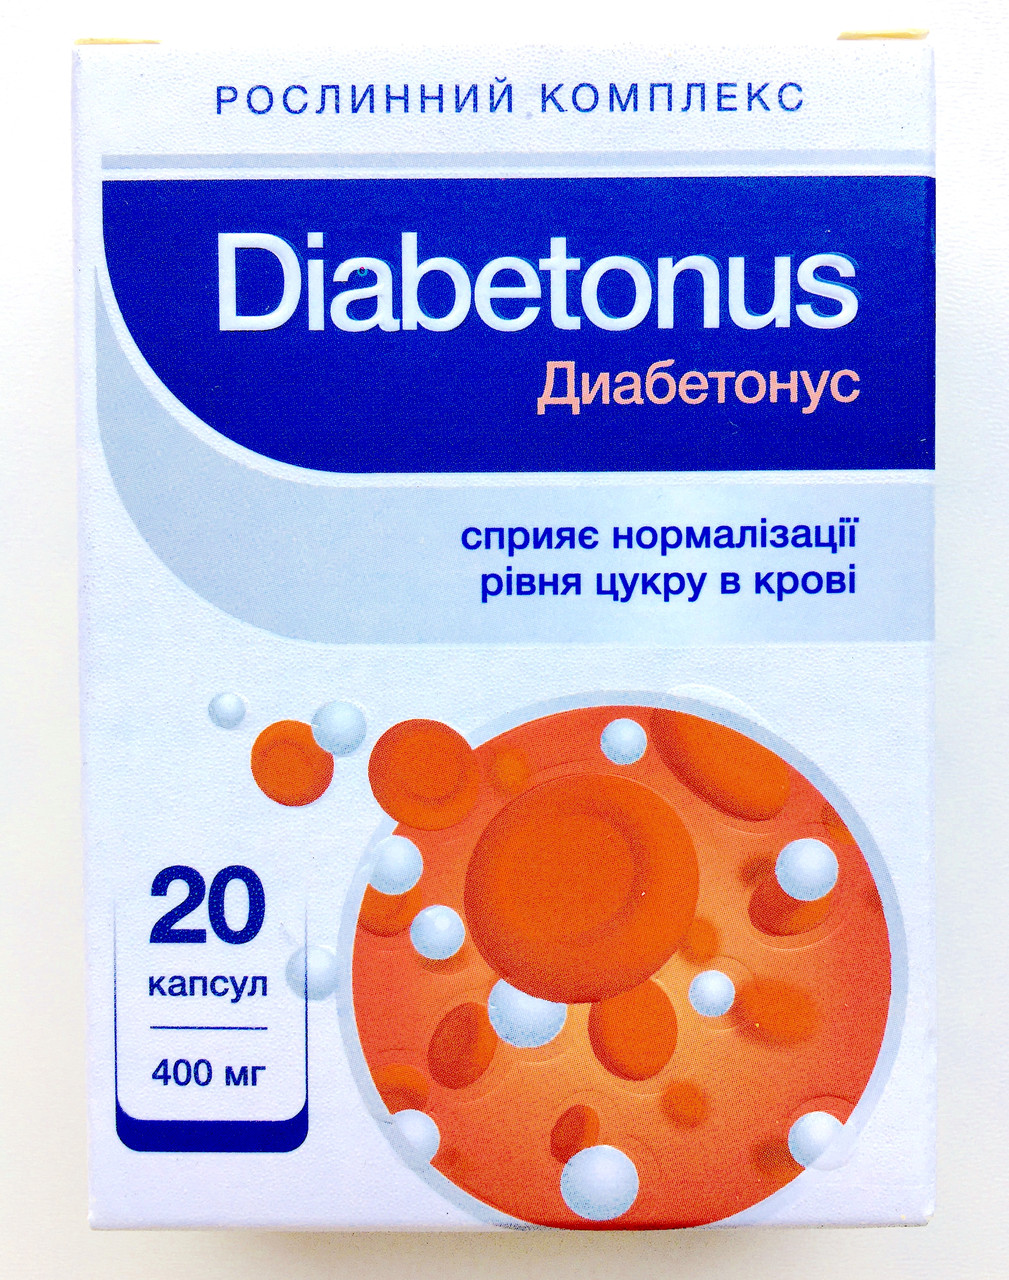 Diabetonus - засіб для нормазізації рівня цукру (Діабетонус)